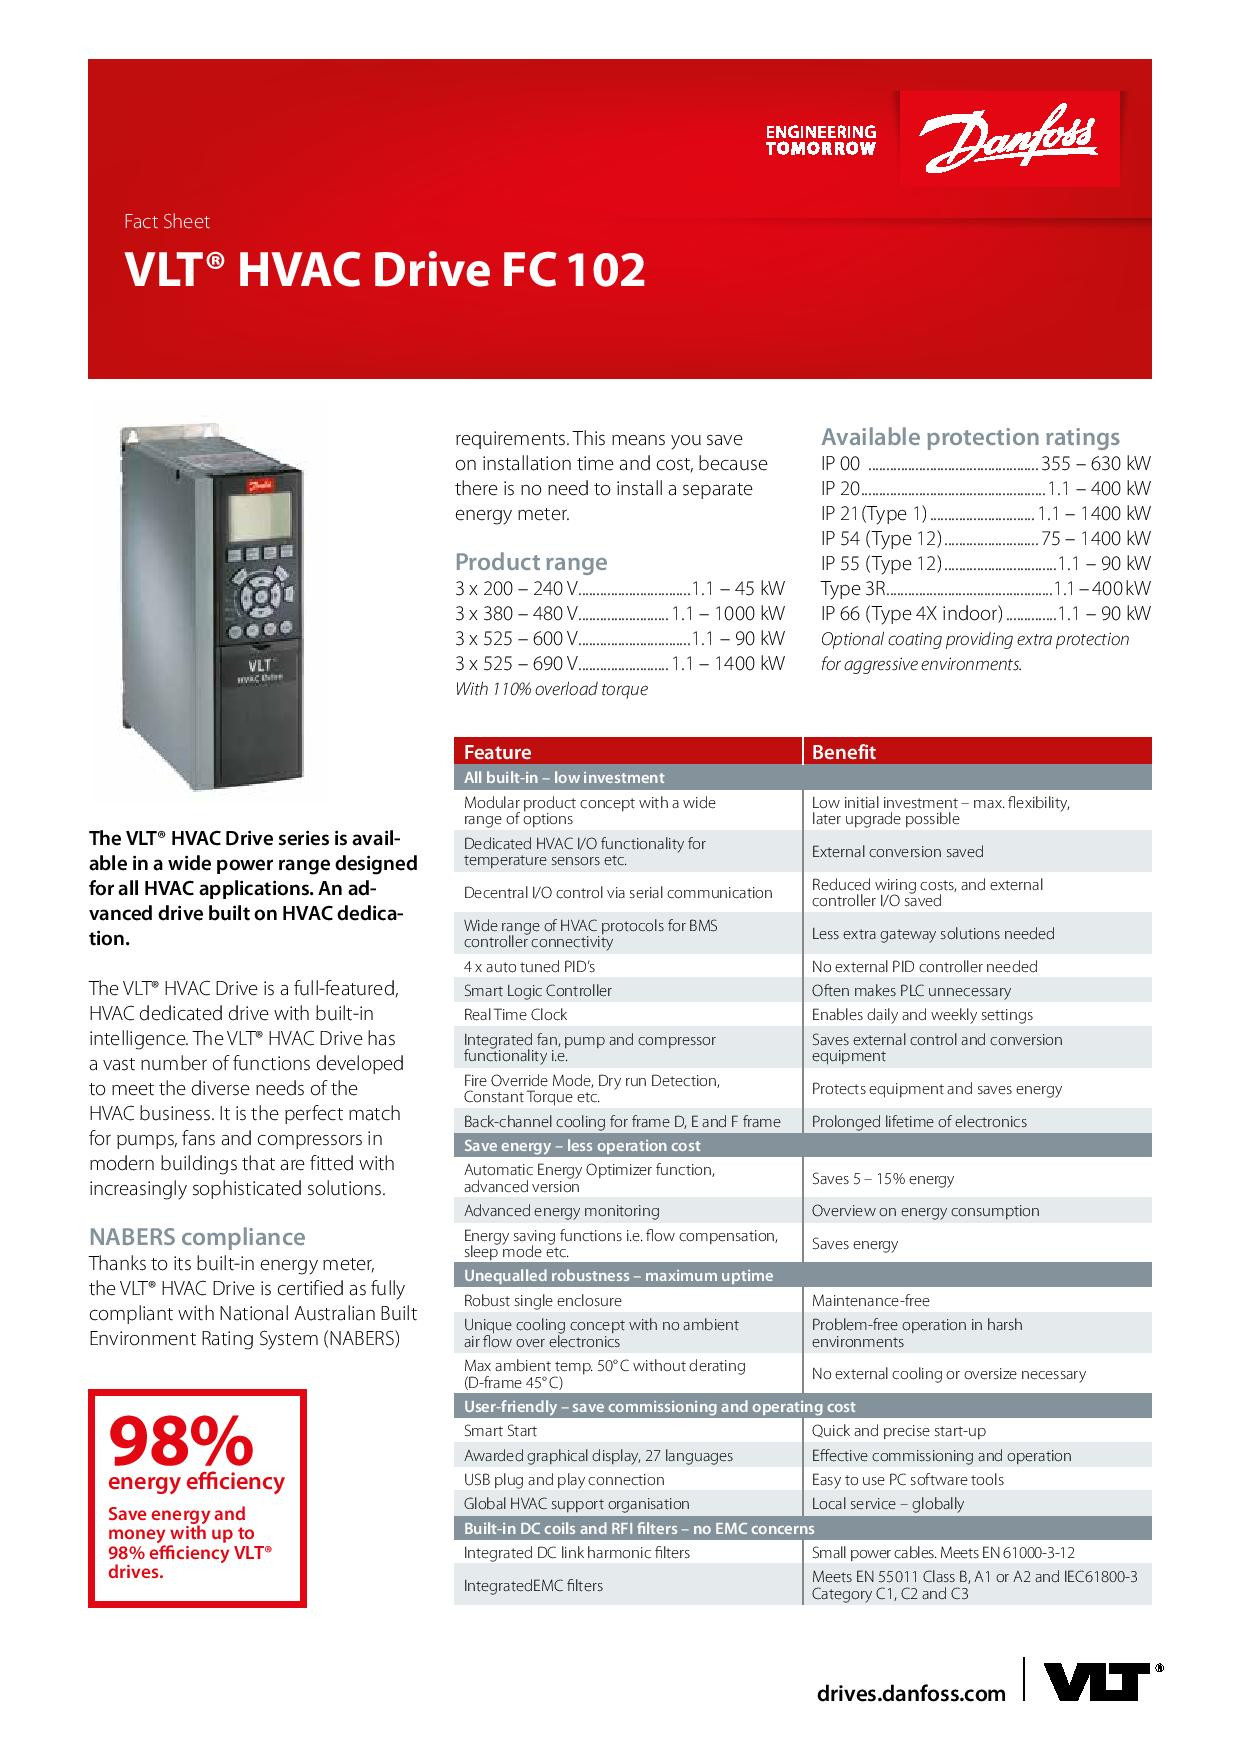 VLT HVAC DRIVE FC 102